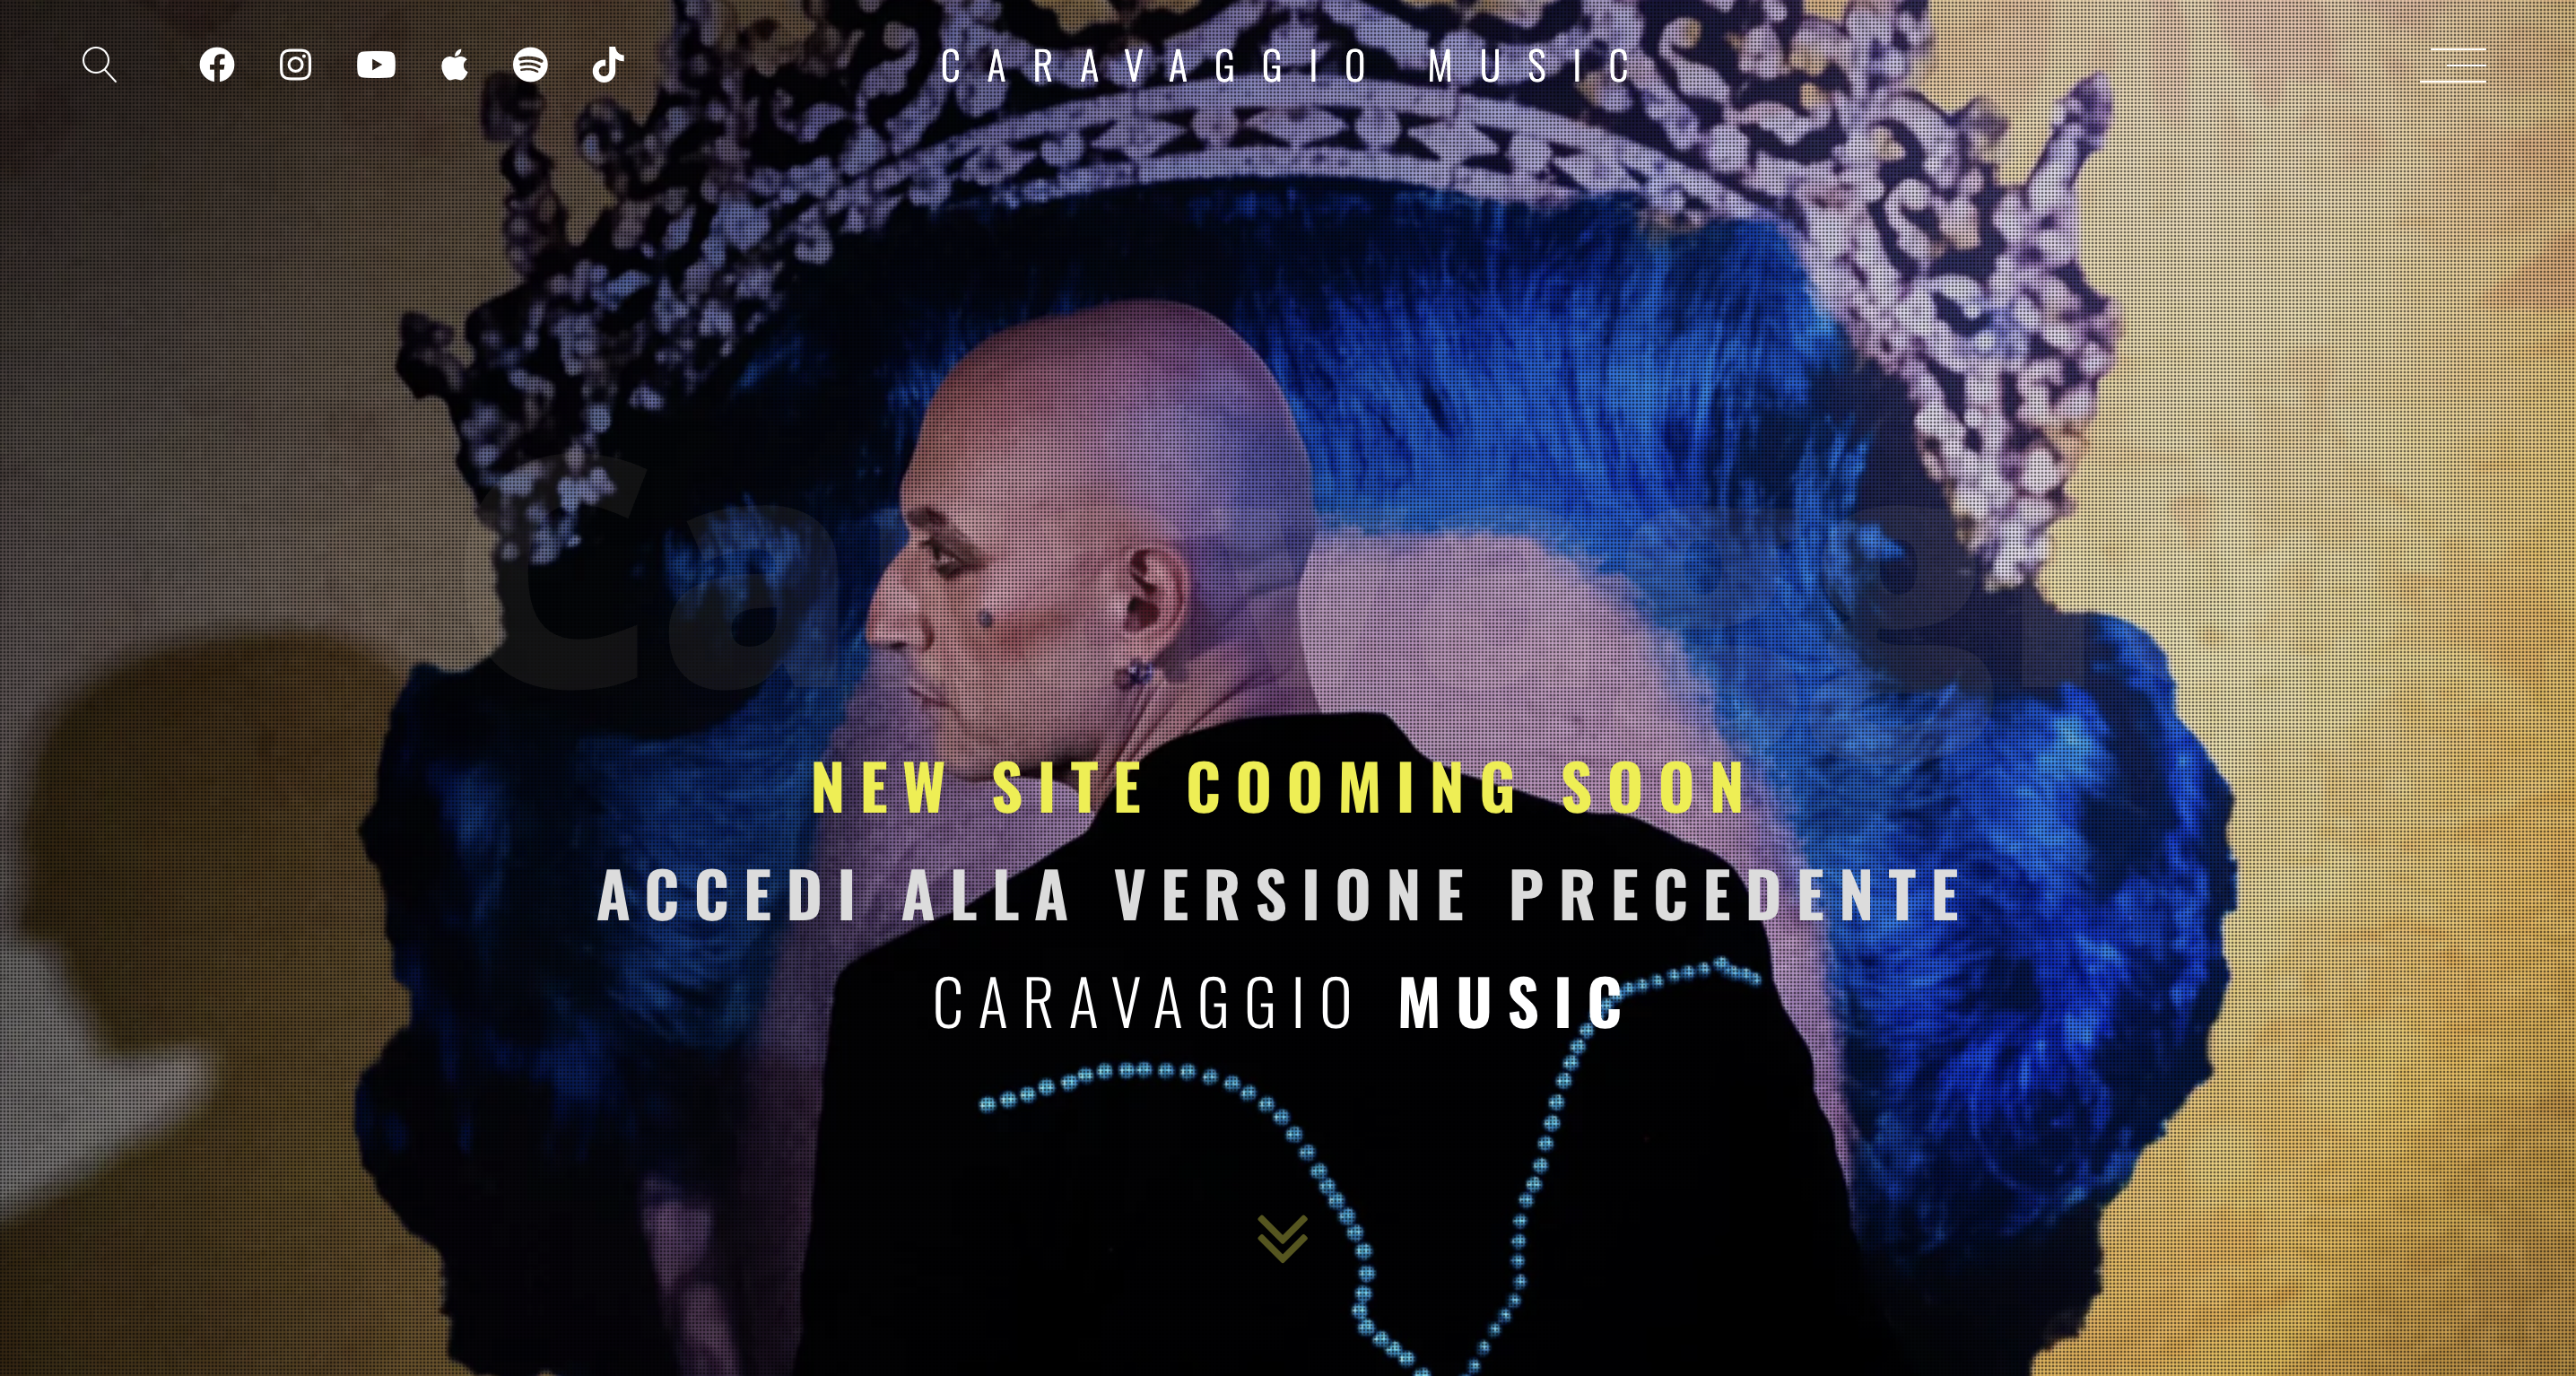 Project Caravaggio Music